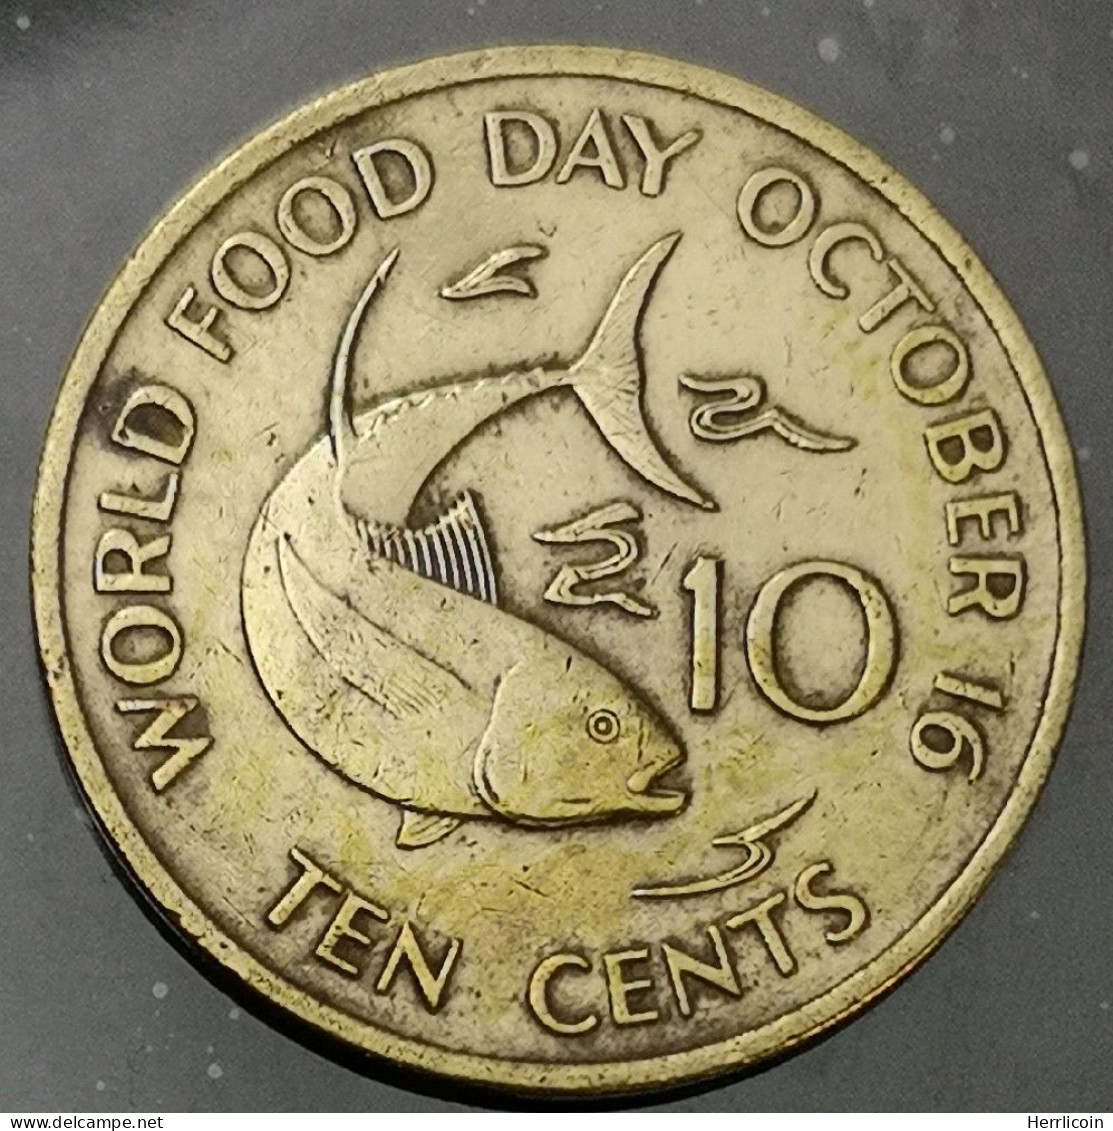 Monnaie Seychelles - 1981 - 10 Cents FAO - Seychelles